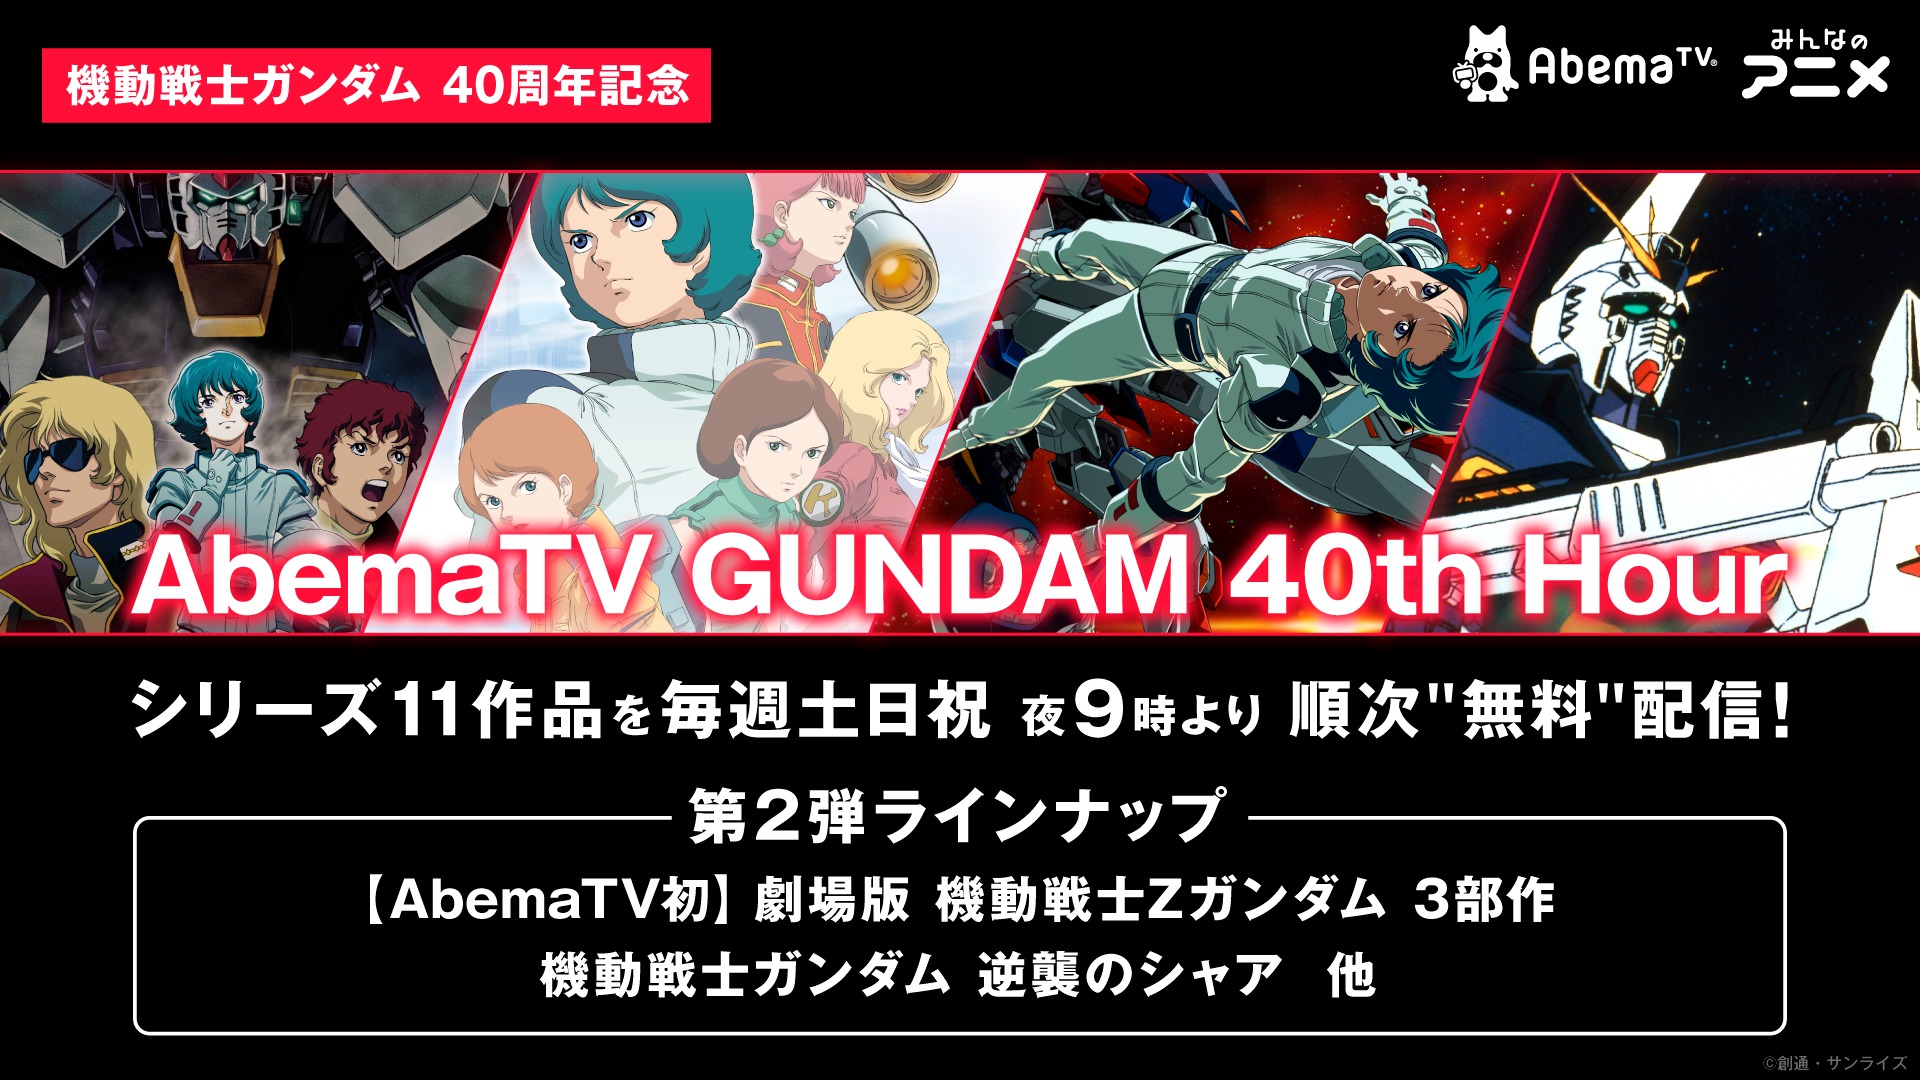 Abematv Gundam 40th Hour ラインナップ第2弾発表 劇場版 機動戦士